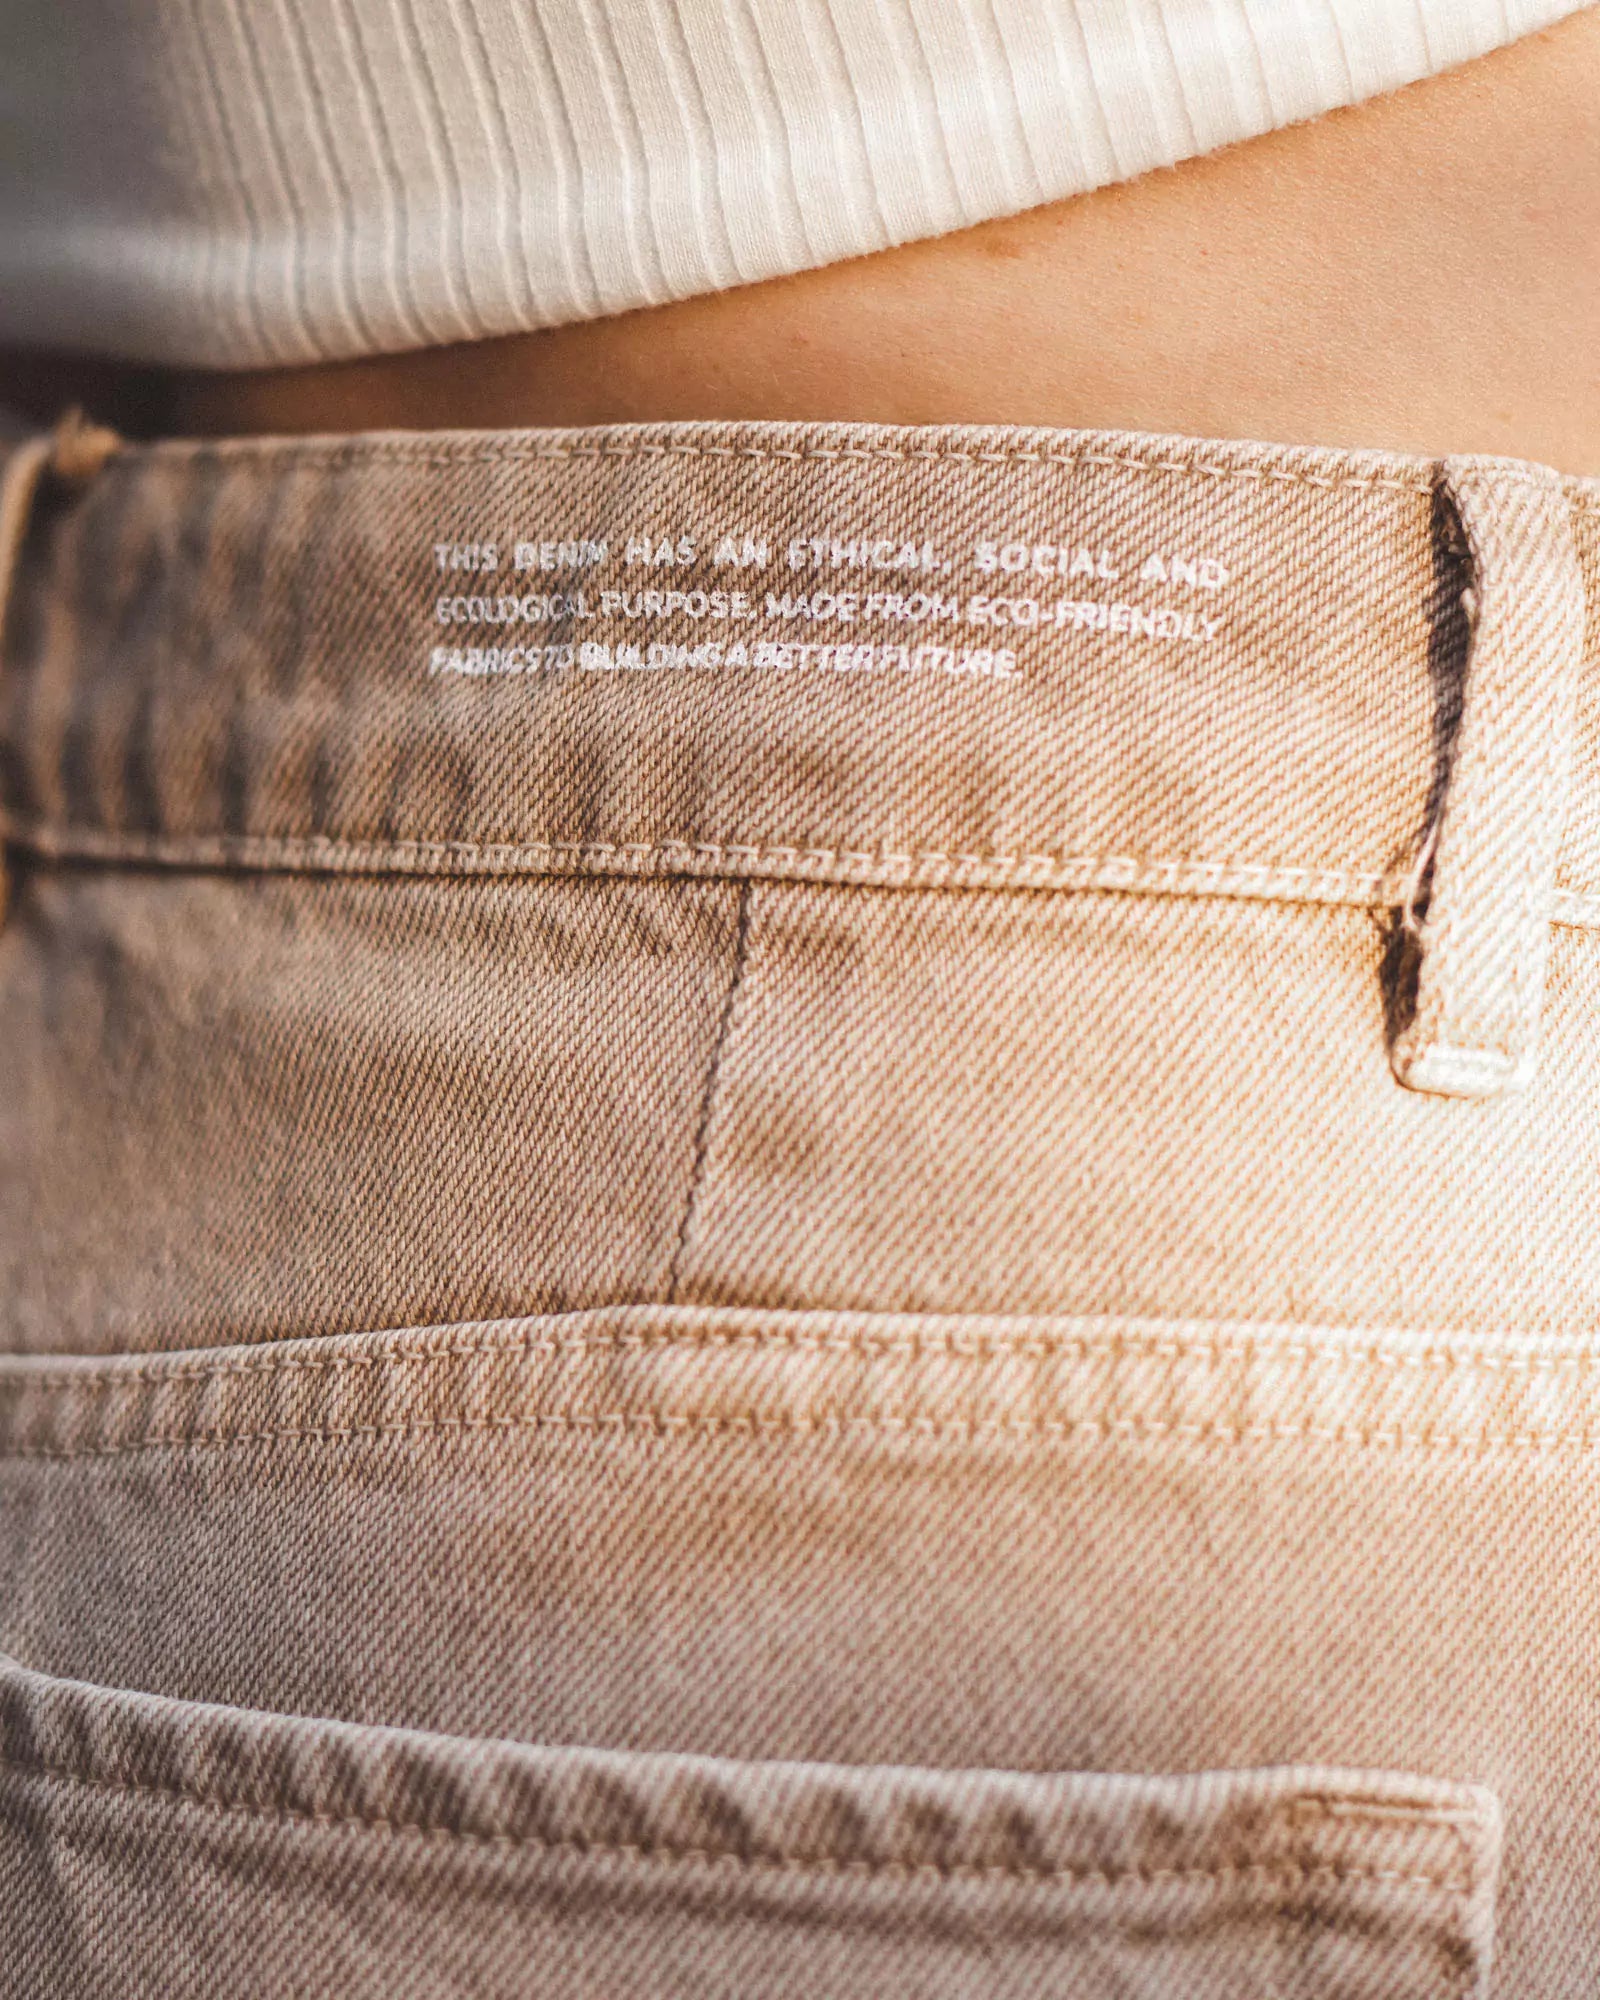 Calça Jeans Slouchy Marrom Claro Eco Denim™. Compre online moda sustentável e atemporal na Minimadeia. Roupas femininas estilosas, básicas e sustentáveis. Foto produto 06